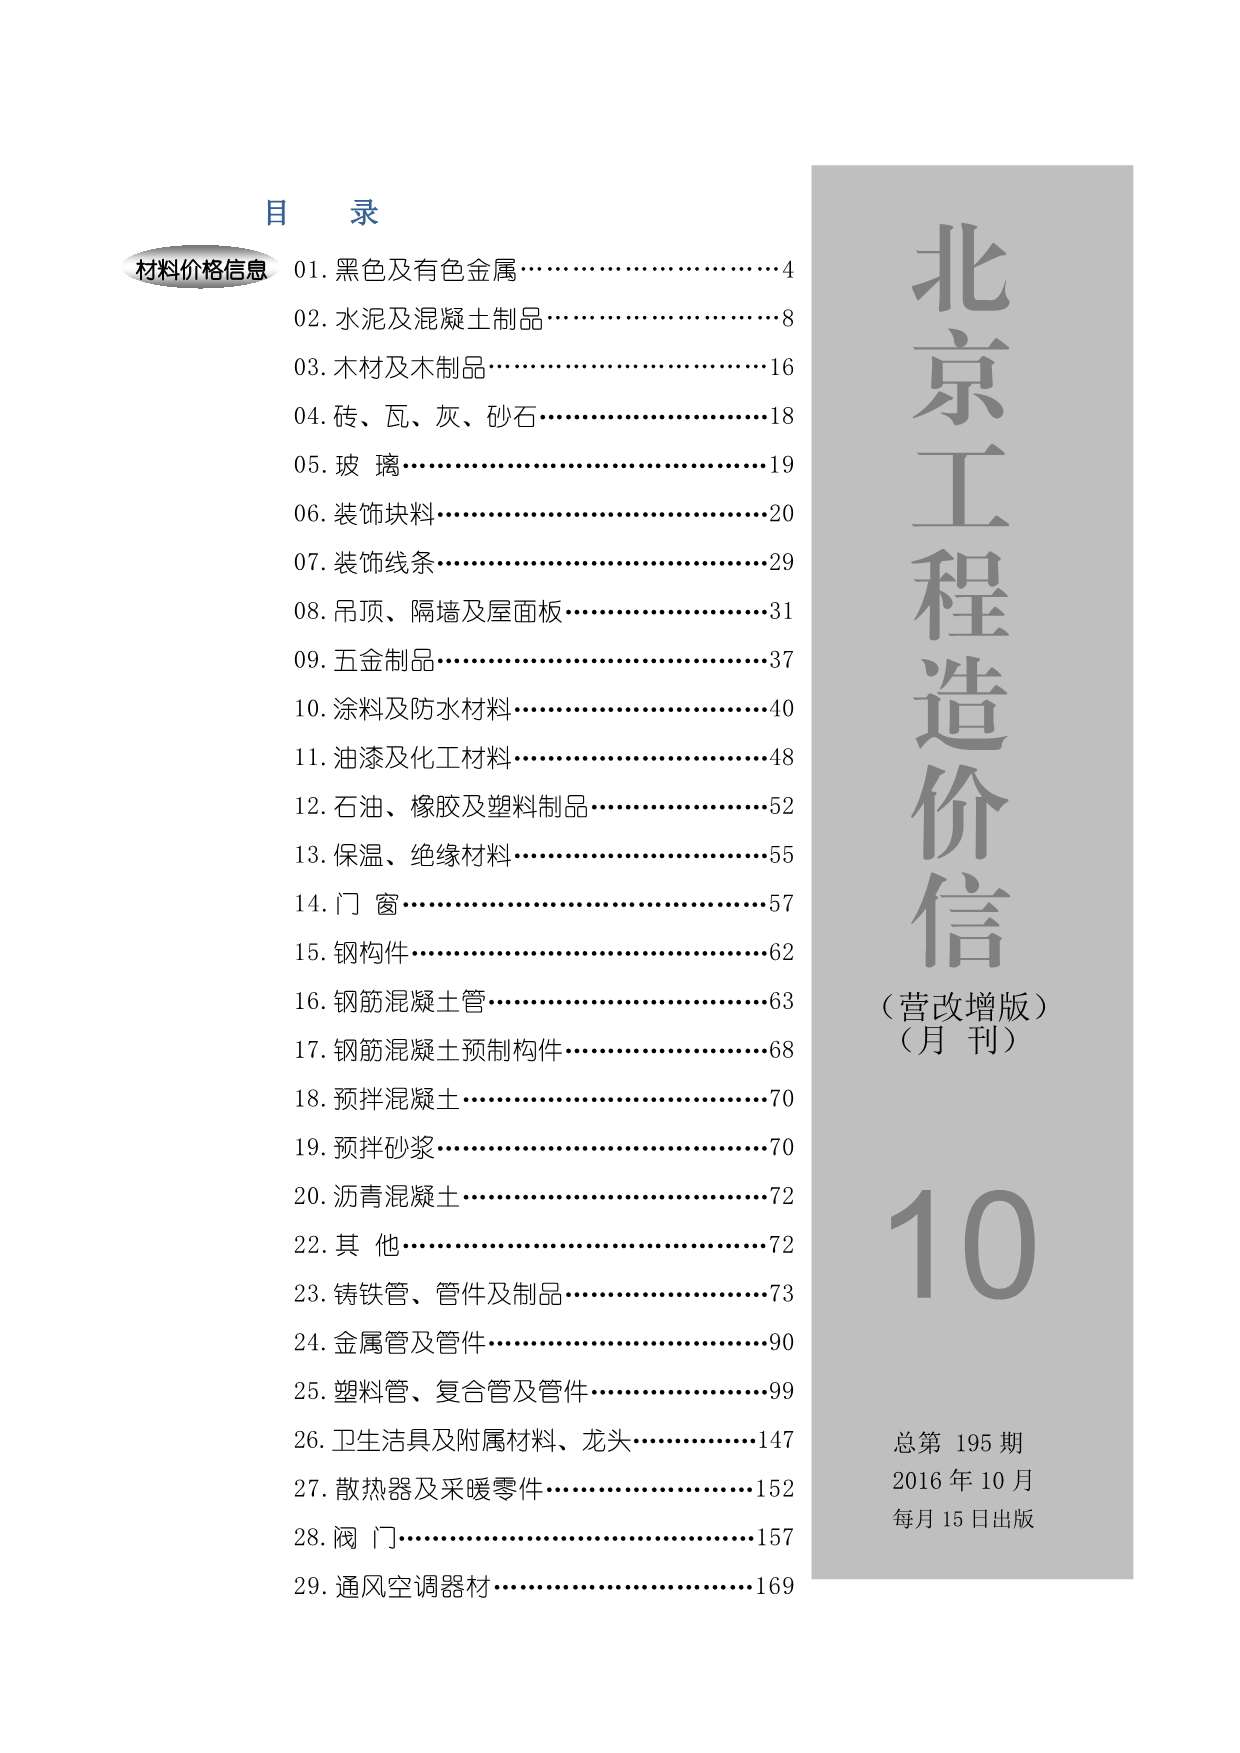 北京市2016年10月工程信息价_北京市信息价期刊PDF扫描件电子版